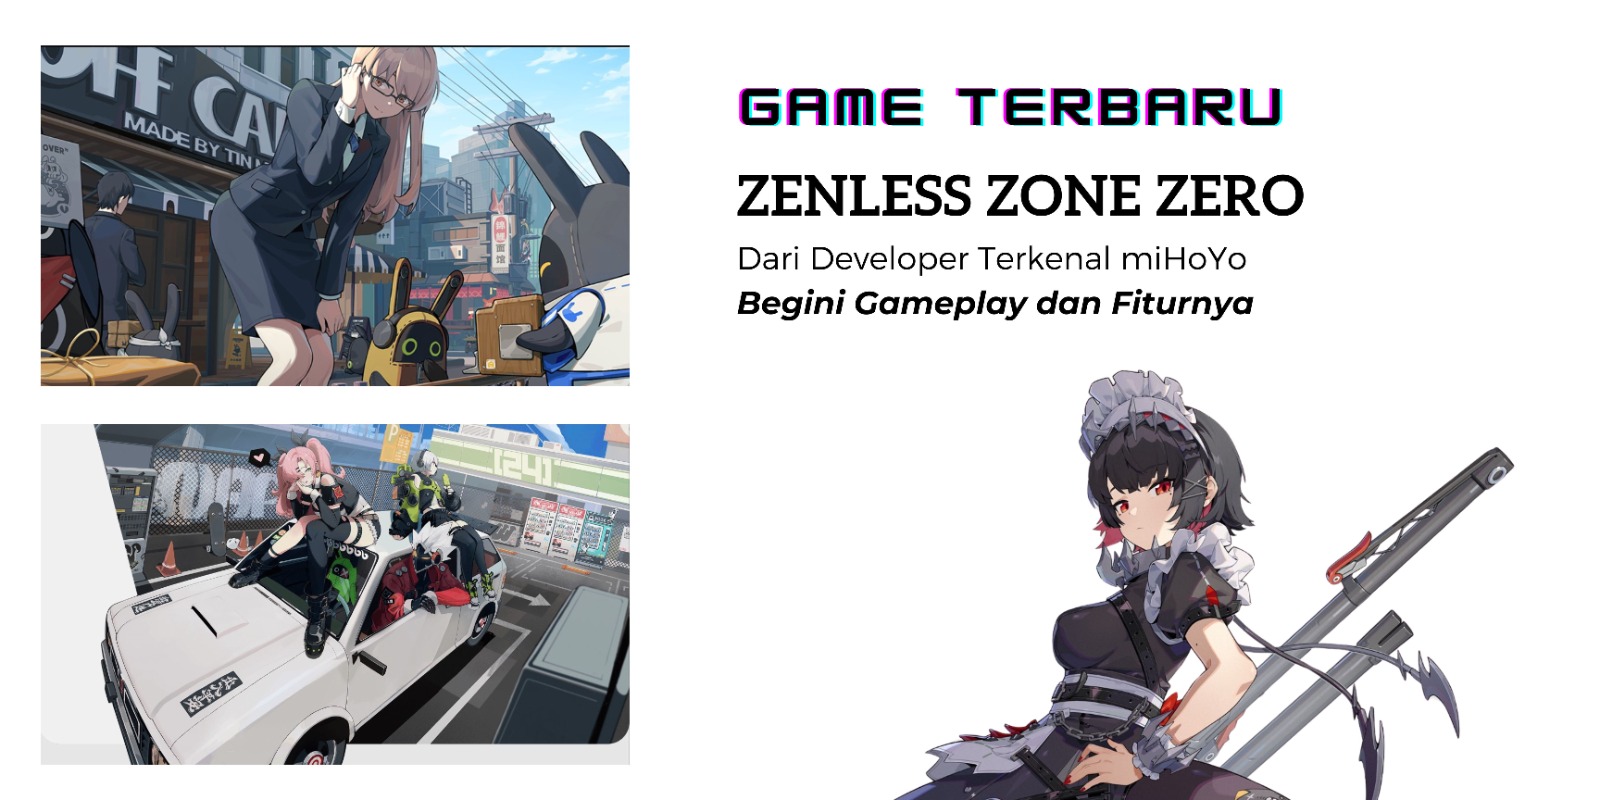 Nantikan, miHoYo akan Kembali Merilis Game Terbaru Zenless Zone Zero! Penasaran Gameplay dan Fiturnya? 